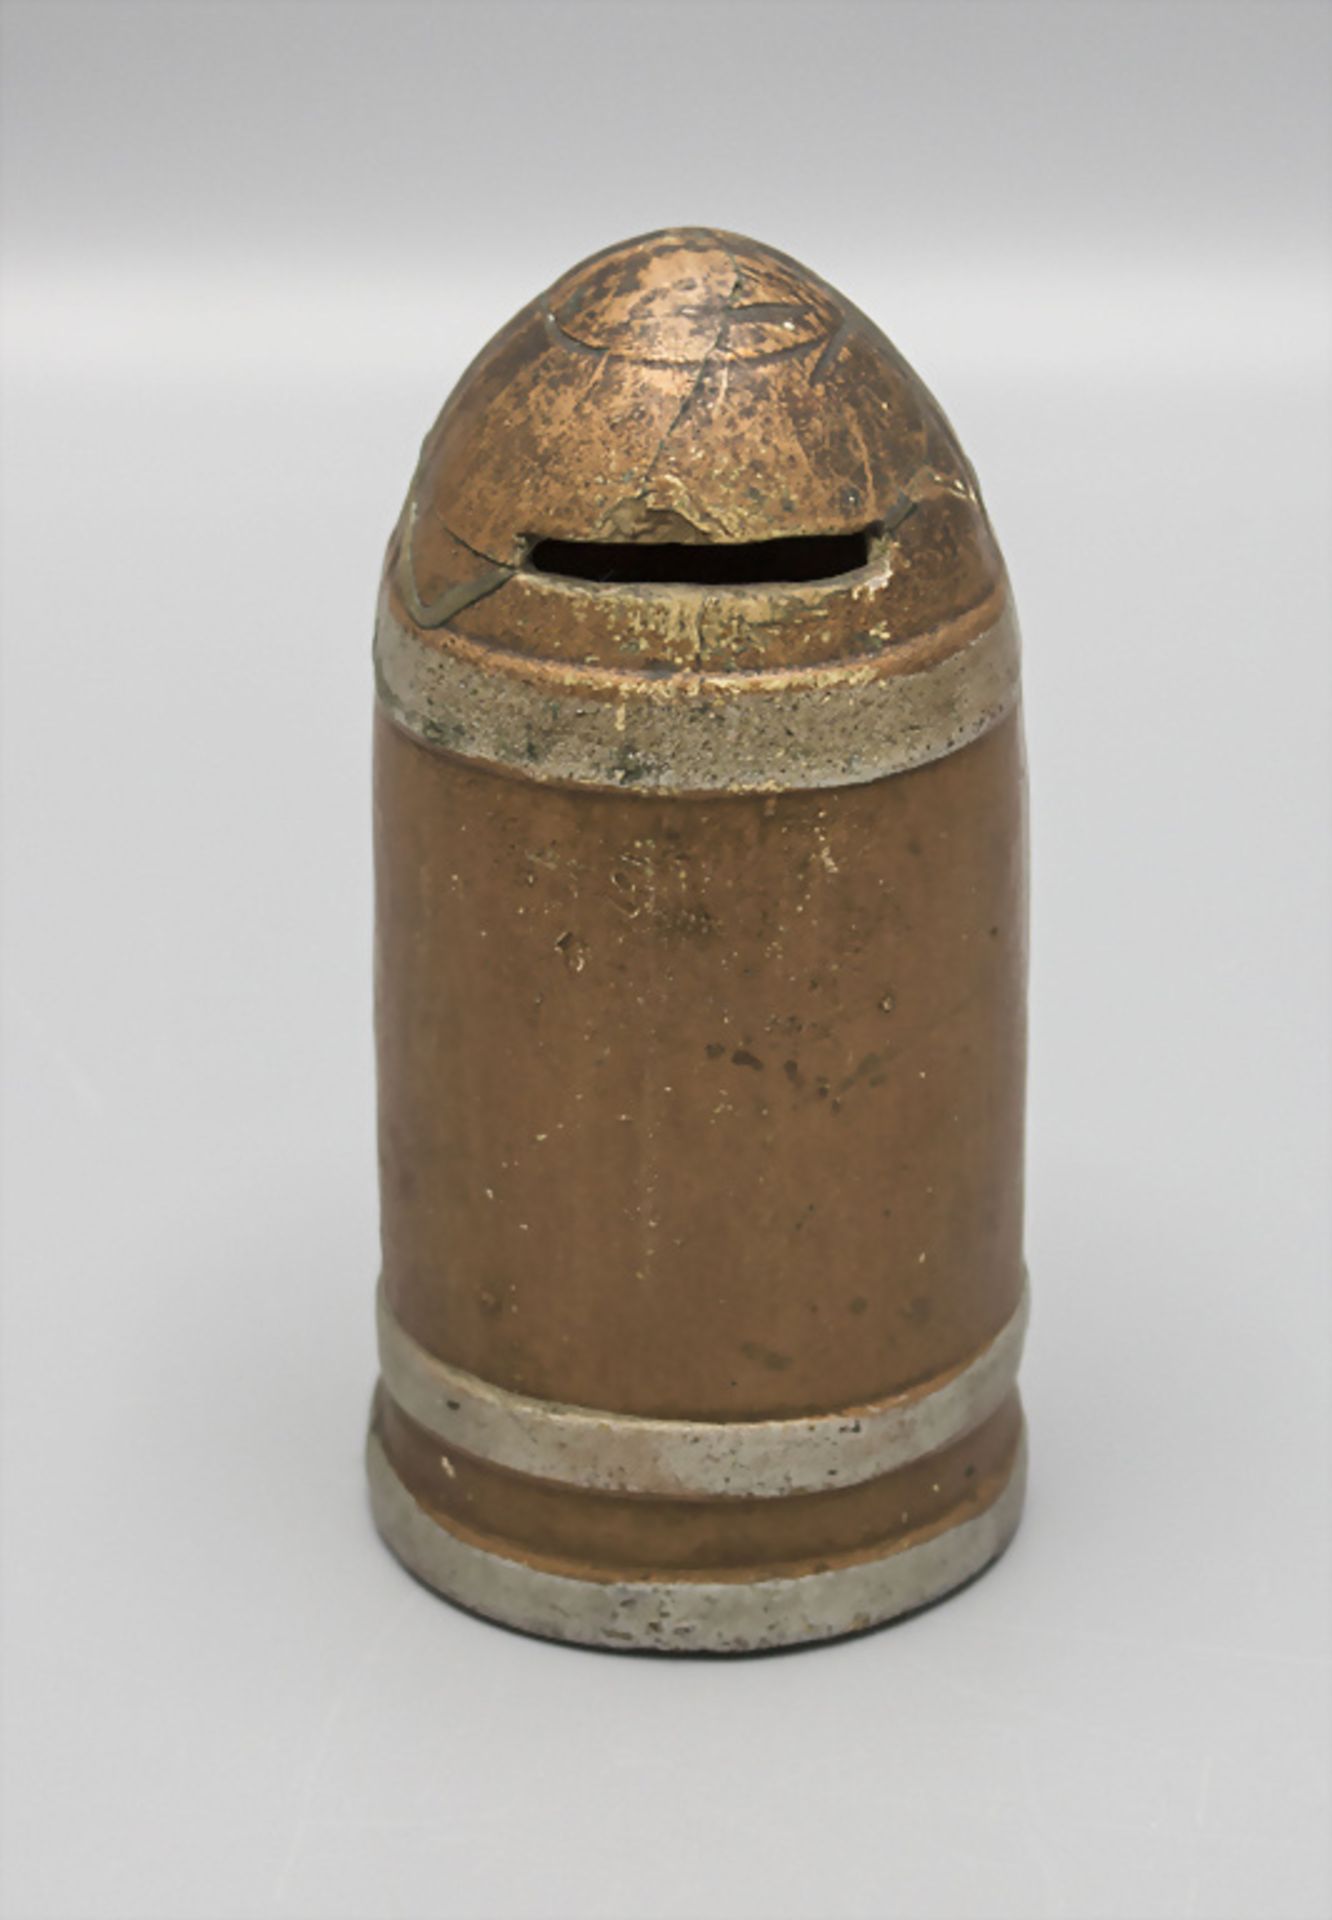 Spardose in Form einer Granate / A grenade shaped money box, deutsch, 1. Weltkrieg - Bild 2 aus 3